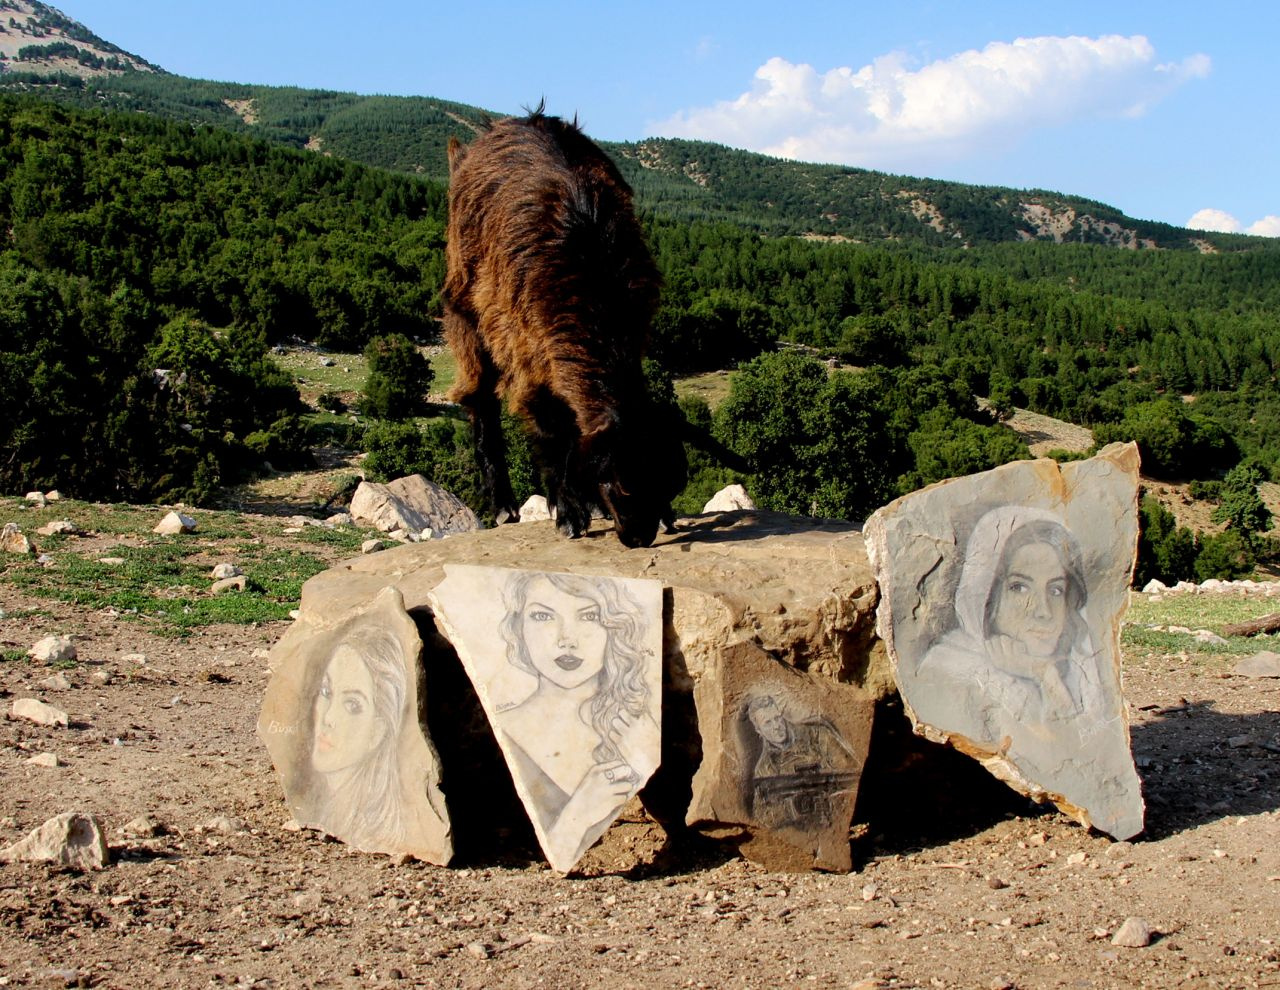 Burdur'da 'Çoban ressam' olarak tanınıyor doğaya mükemmel eserler katıyor